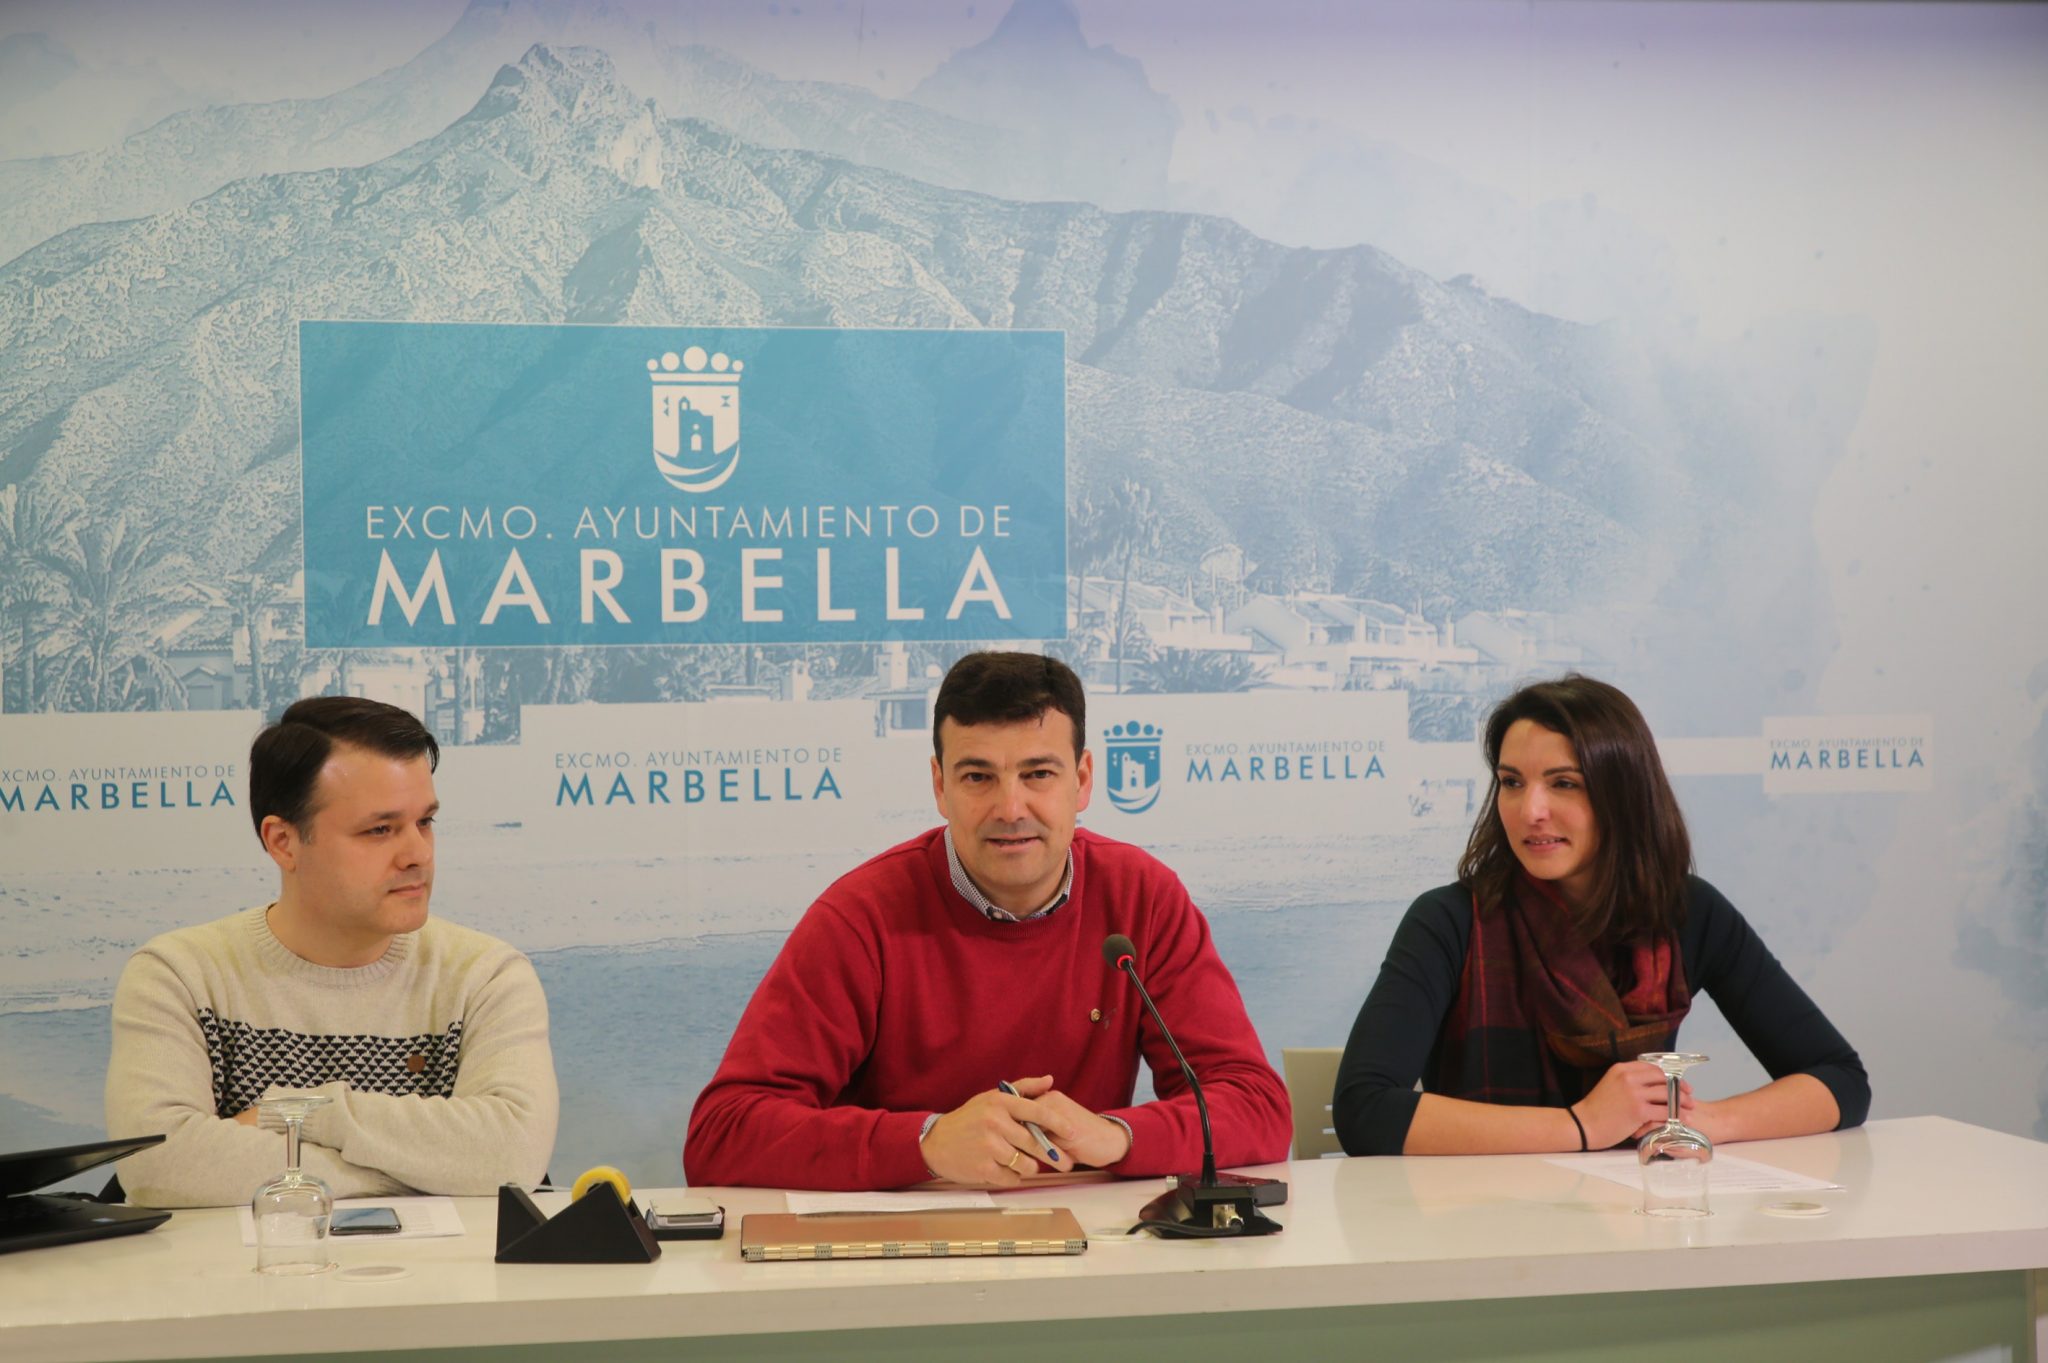 El Hospital Real de la Misericordia acogerá el día 21 de febrero el DevFest Marbella